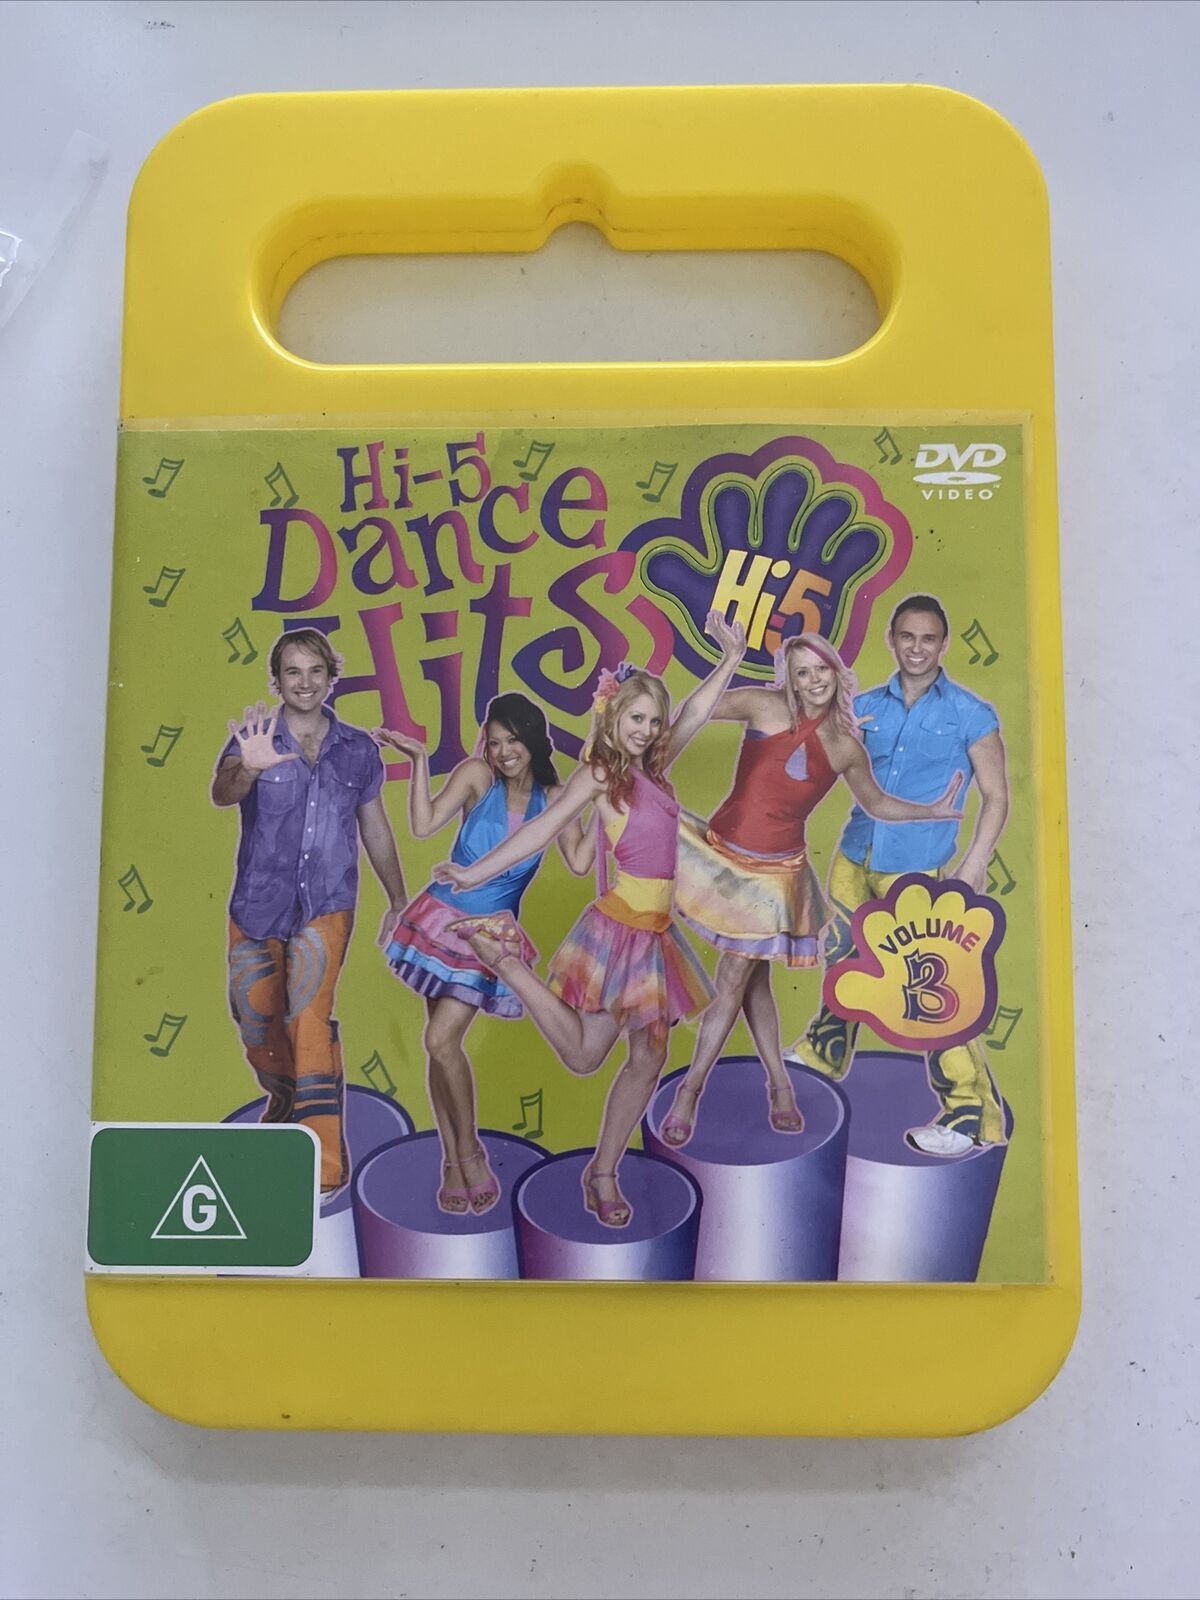 Hi-5 Dance Hits + Team Hi-5 (DVD, 2005) Region 4